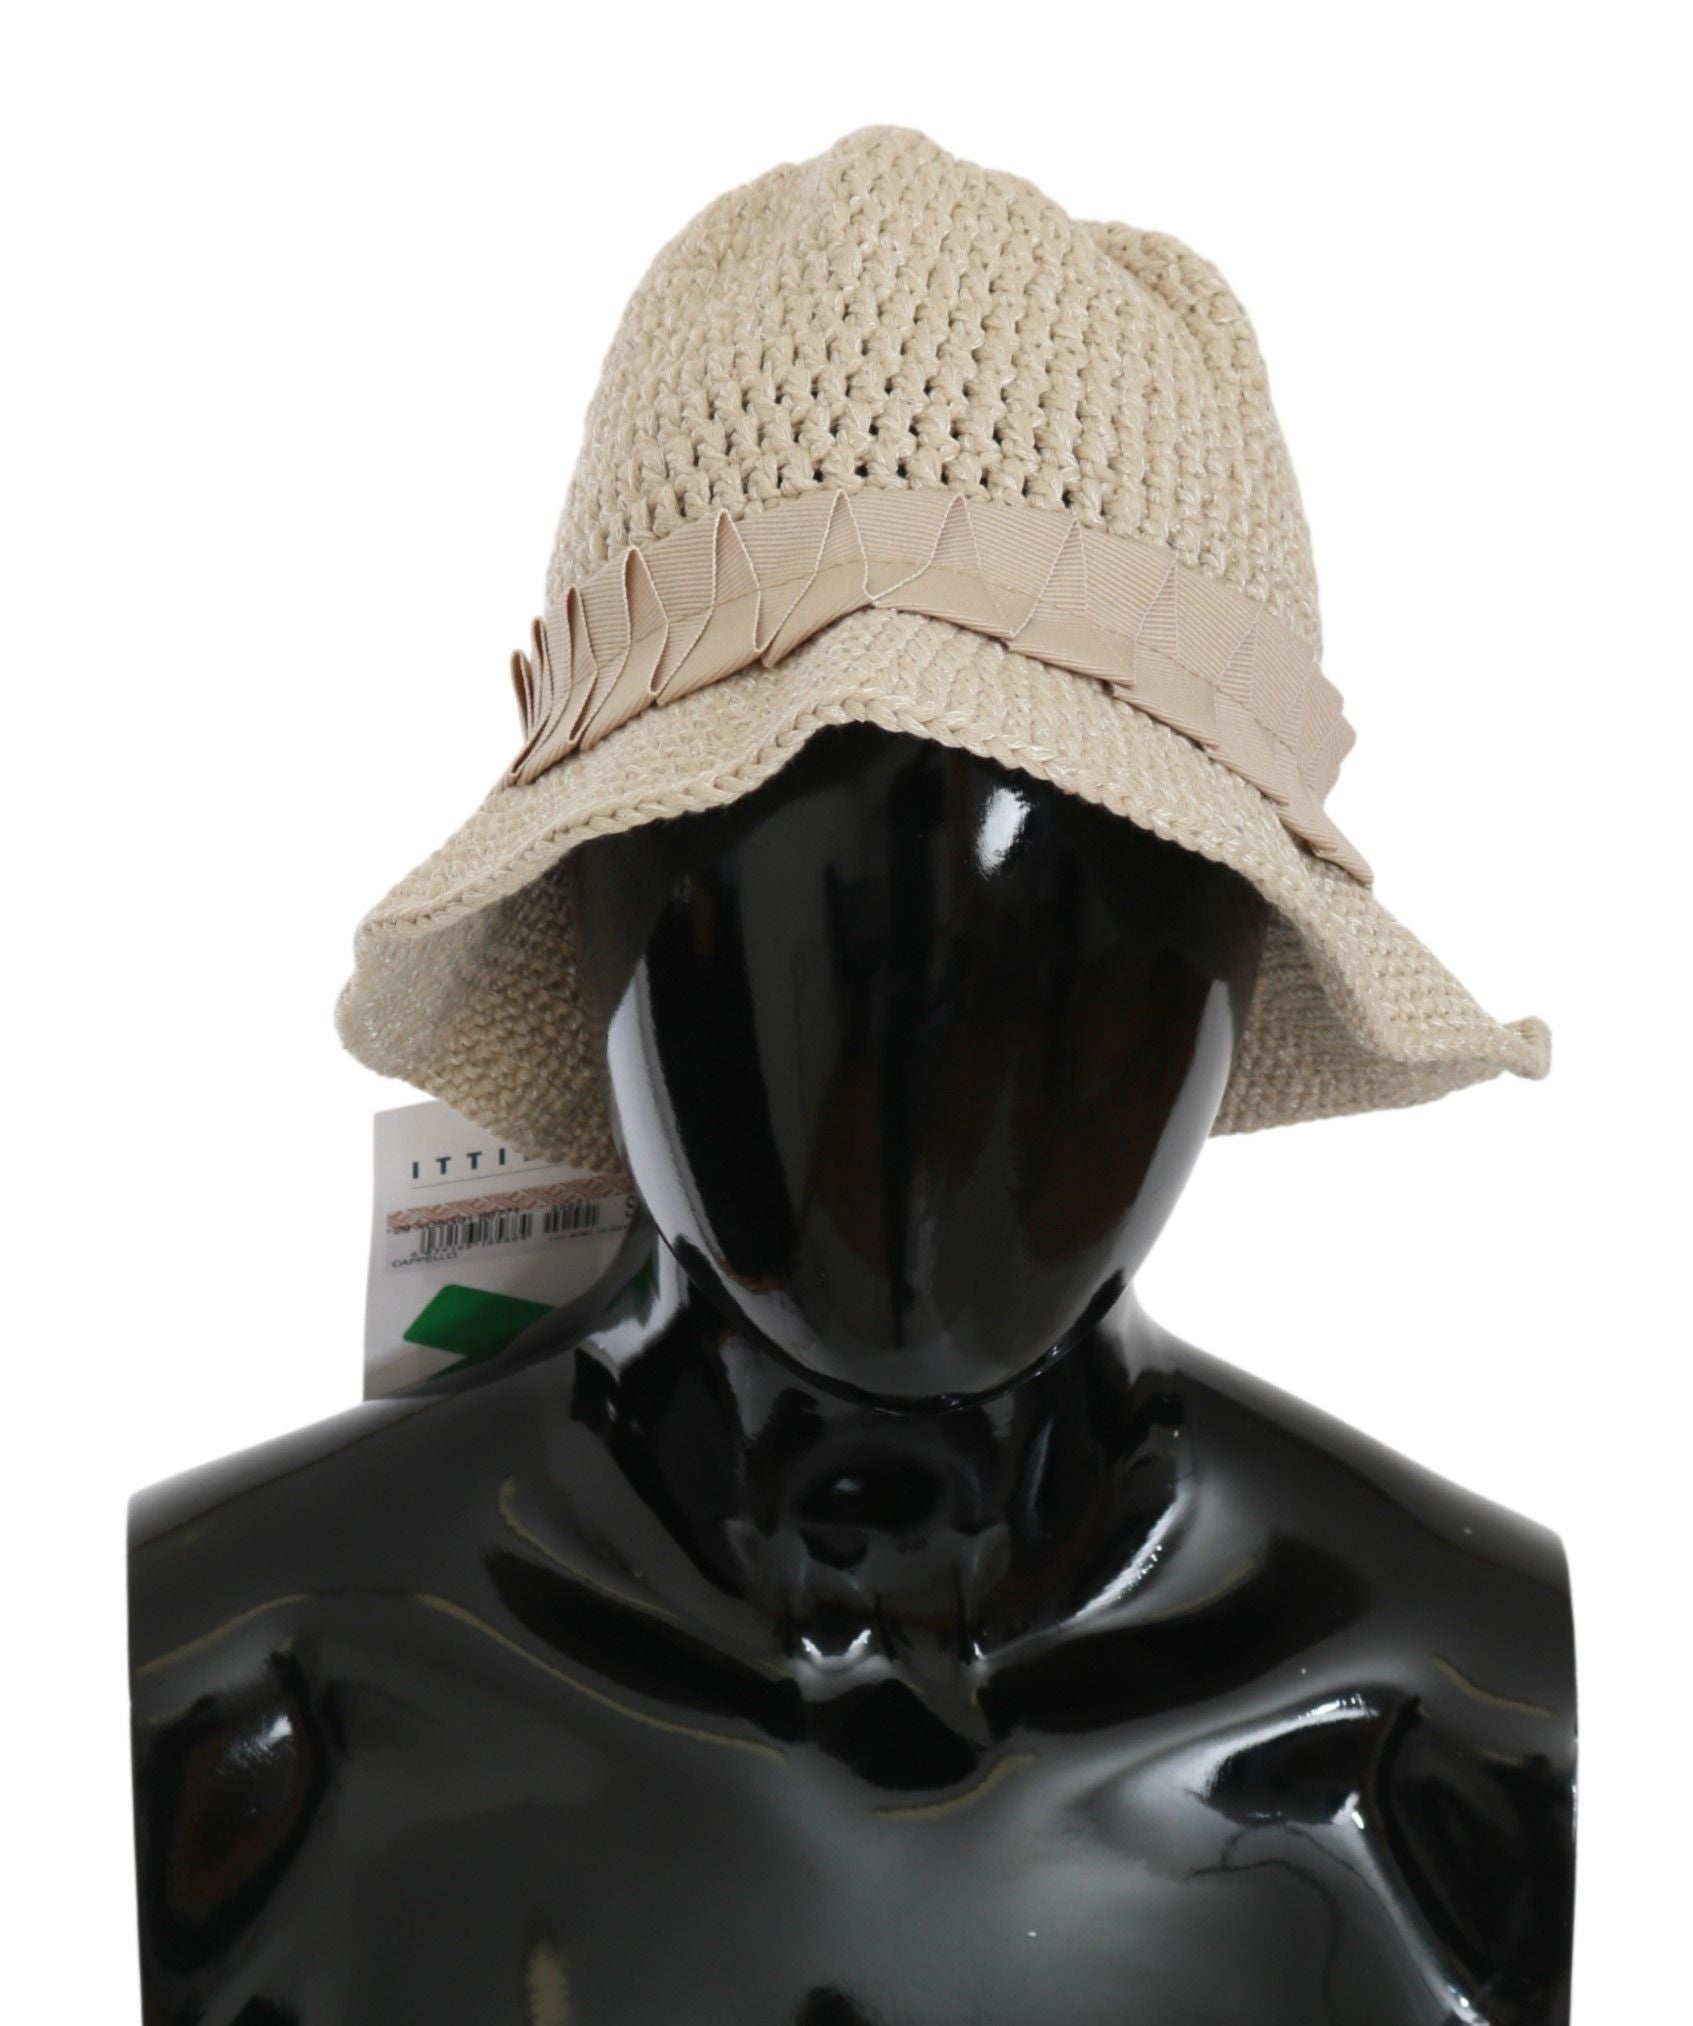 Ermanno Scervino Beige Cotton Woven Bucket Cap Women Hat